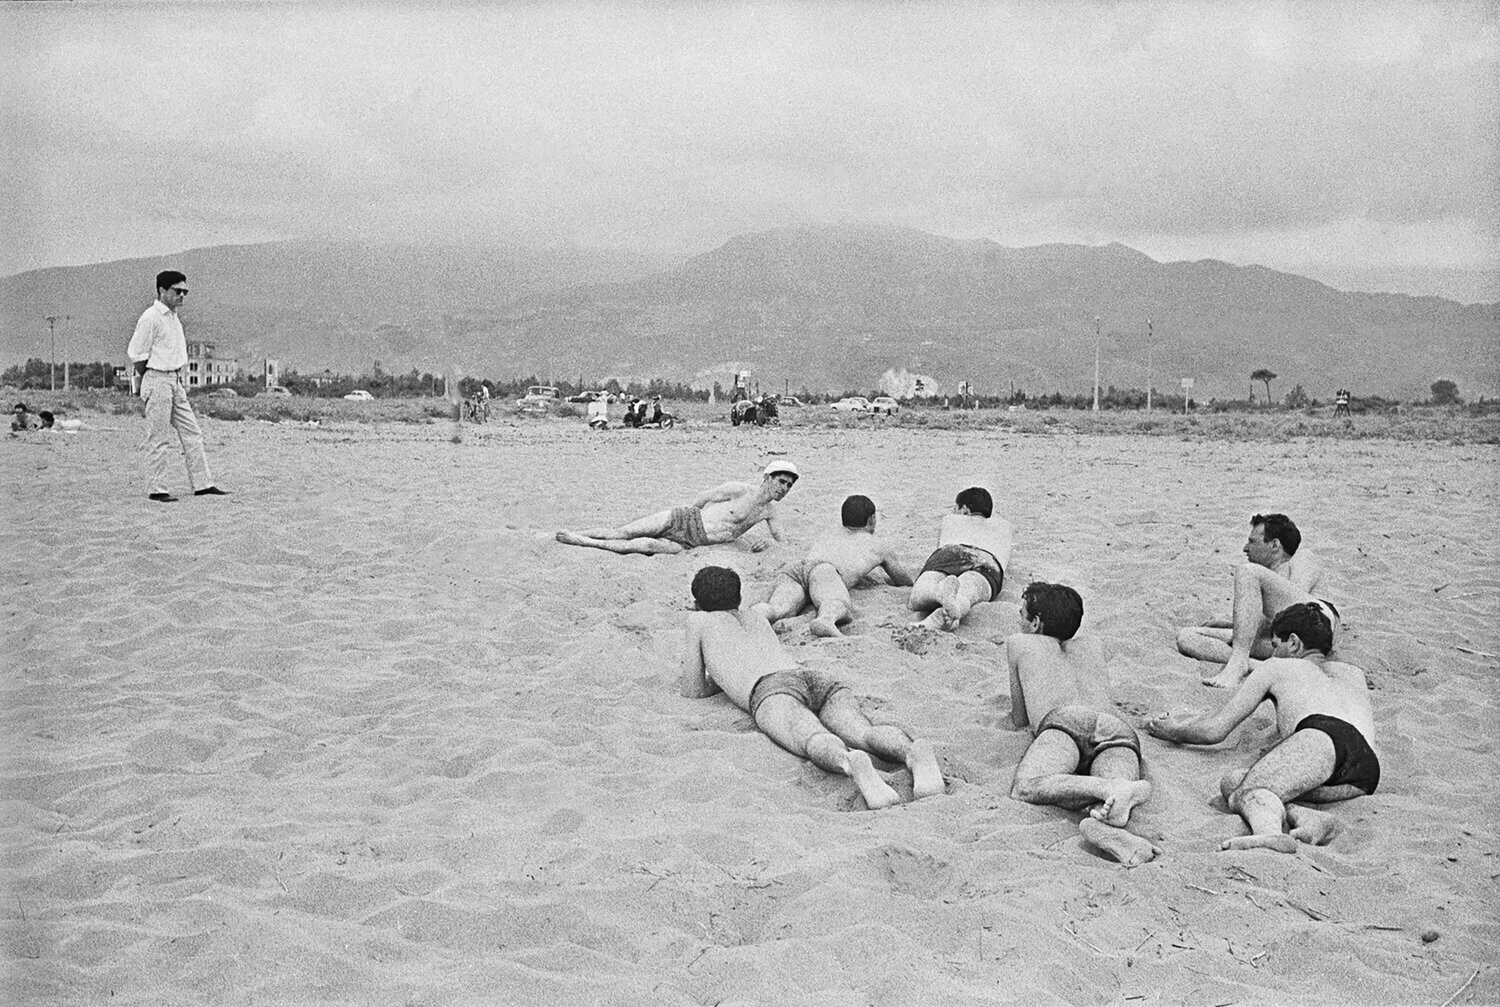 Пьер Паоло Пазолини на пляже Чинкуале (Версилия), 1959 год. Фотограф Паоло Ди Паоло